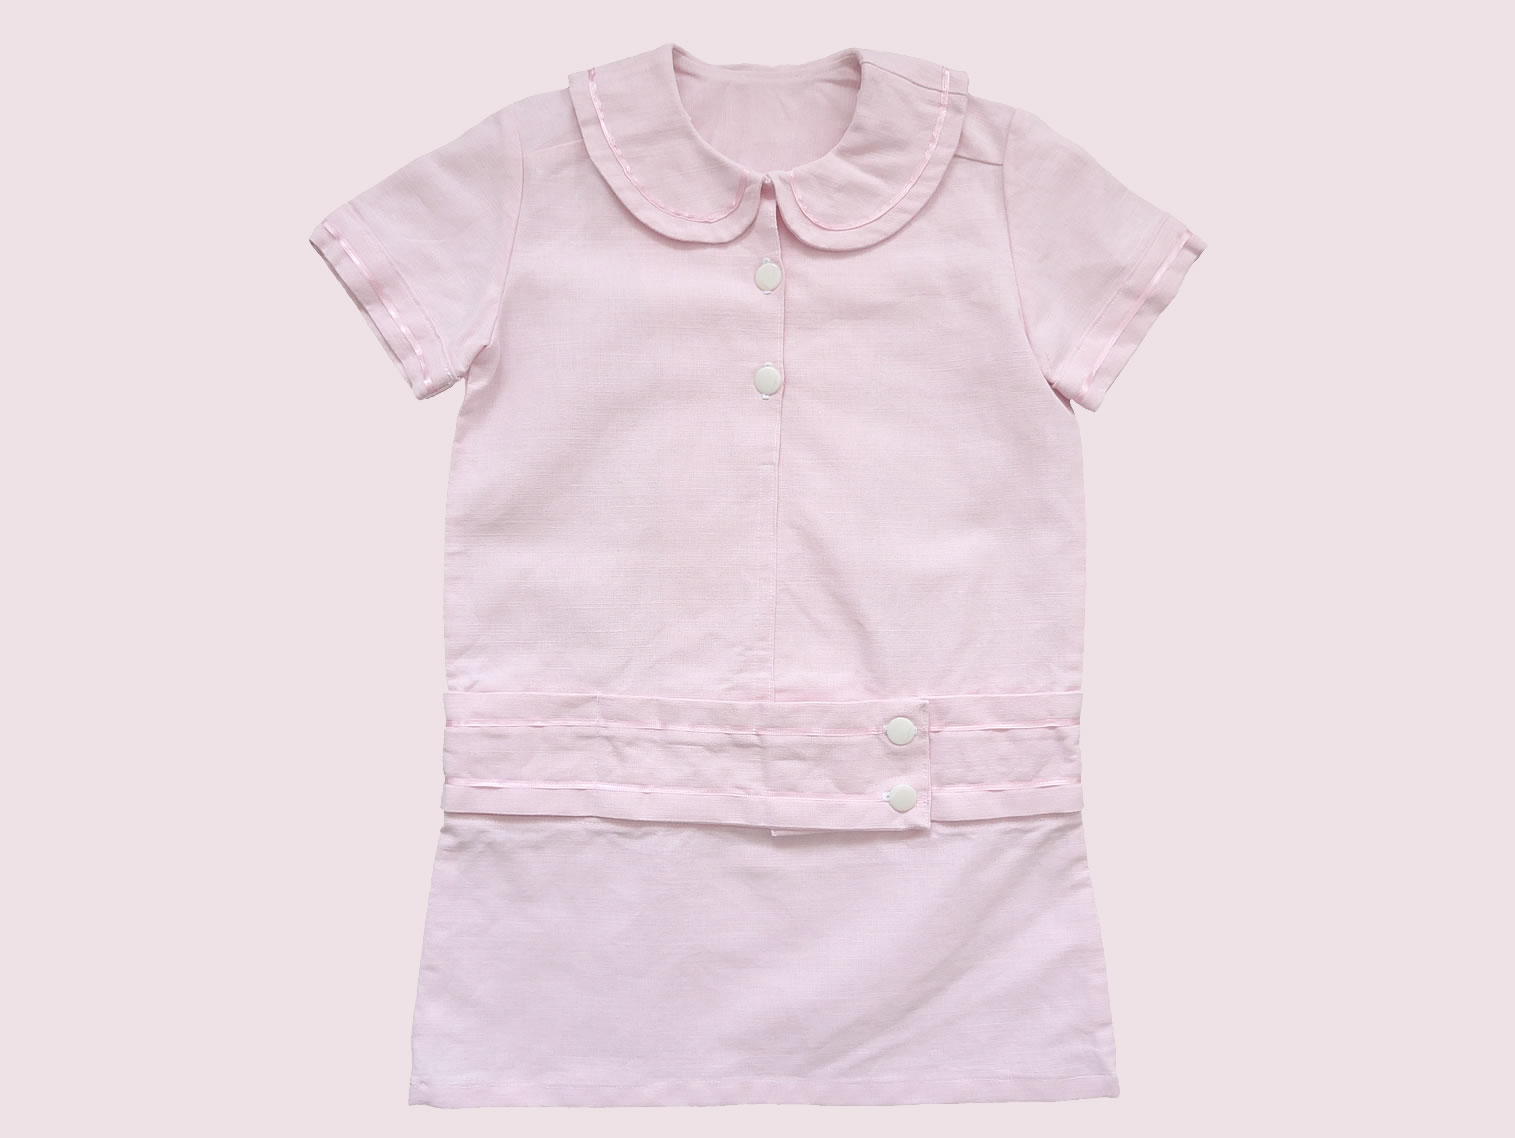 maedchen-kinder-kleid-retro-hemdchen-leinen-rosa-bubikragen-zwanziger-jahre-festliche-kindermode-bullerbue-vorne